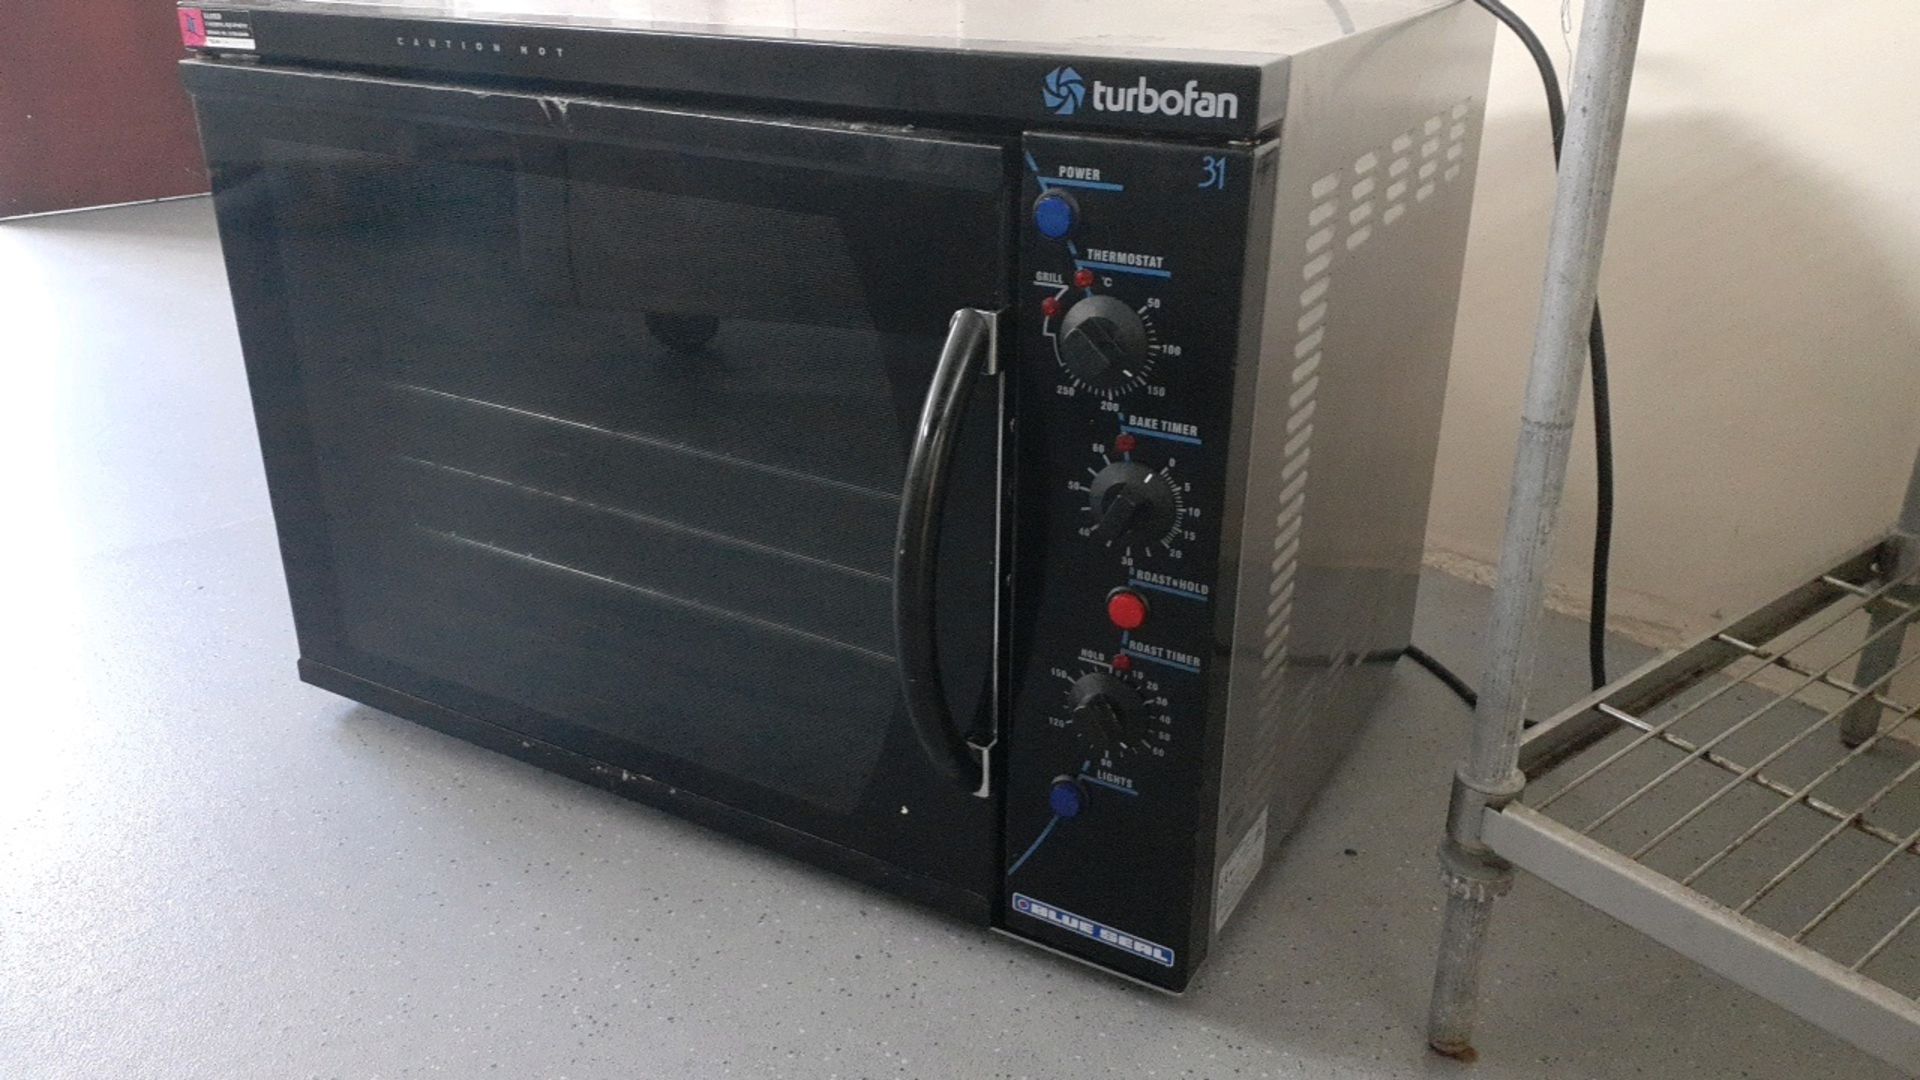 Turbofan oven - Image 2 of 4